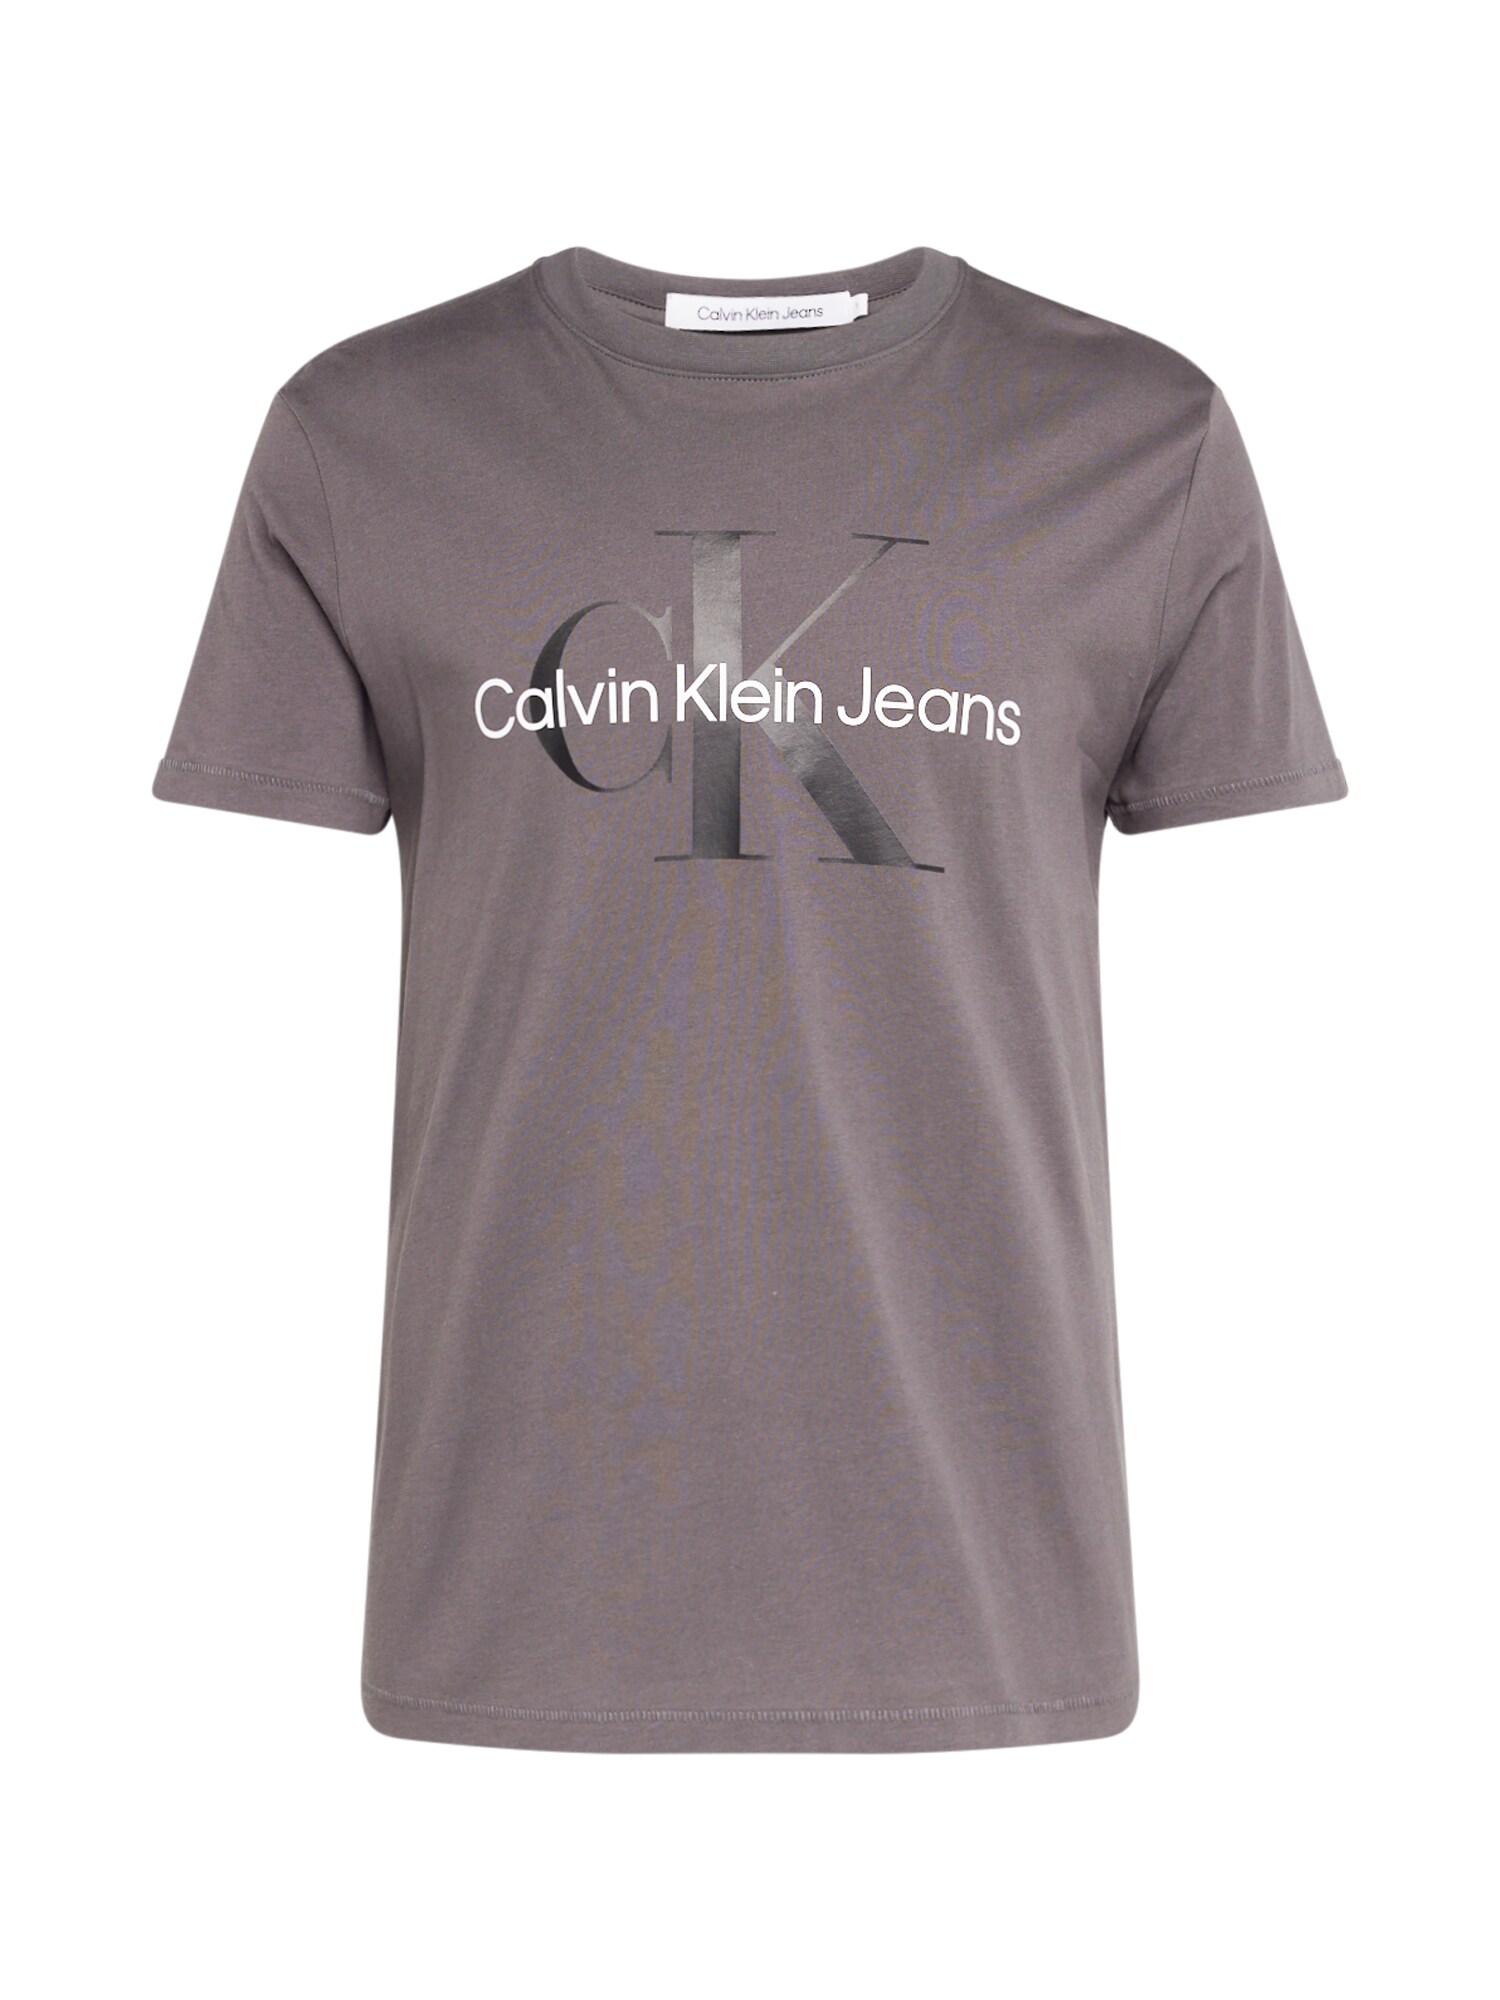 Calvin Klein Jeans Marškinėliai pilka / antracito spalva / balta